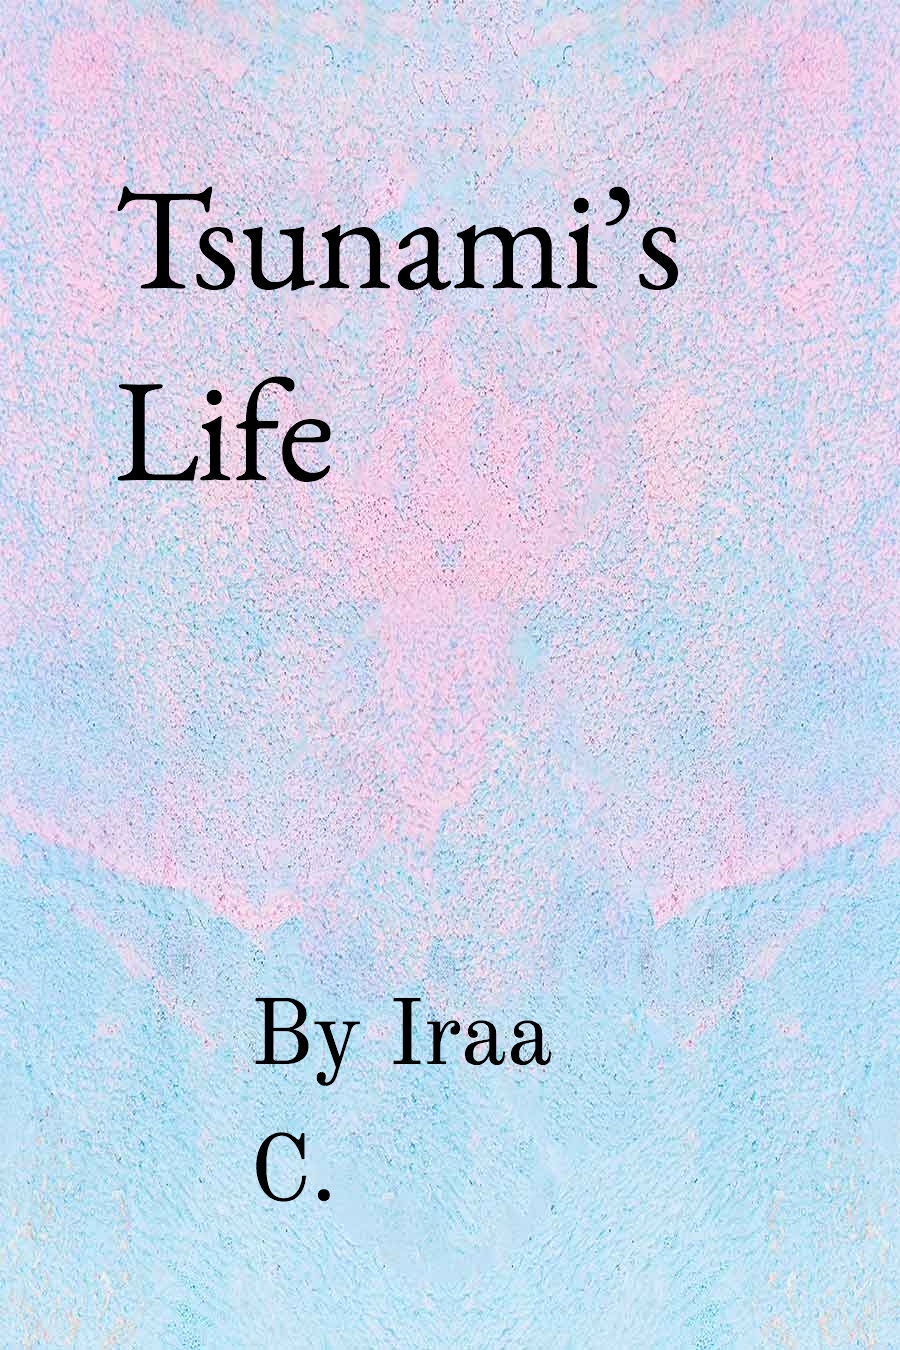 Tsunami’s Life by Iraa C